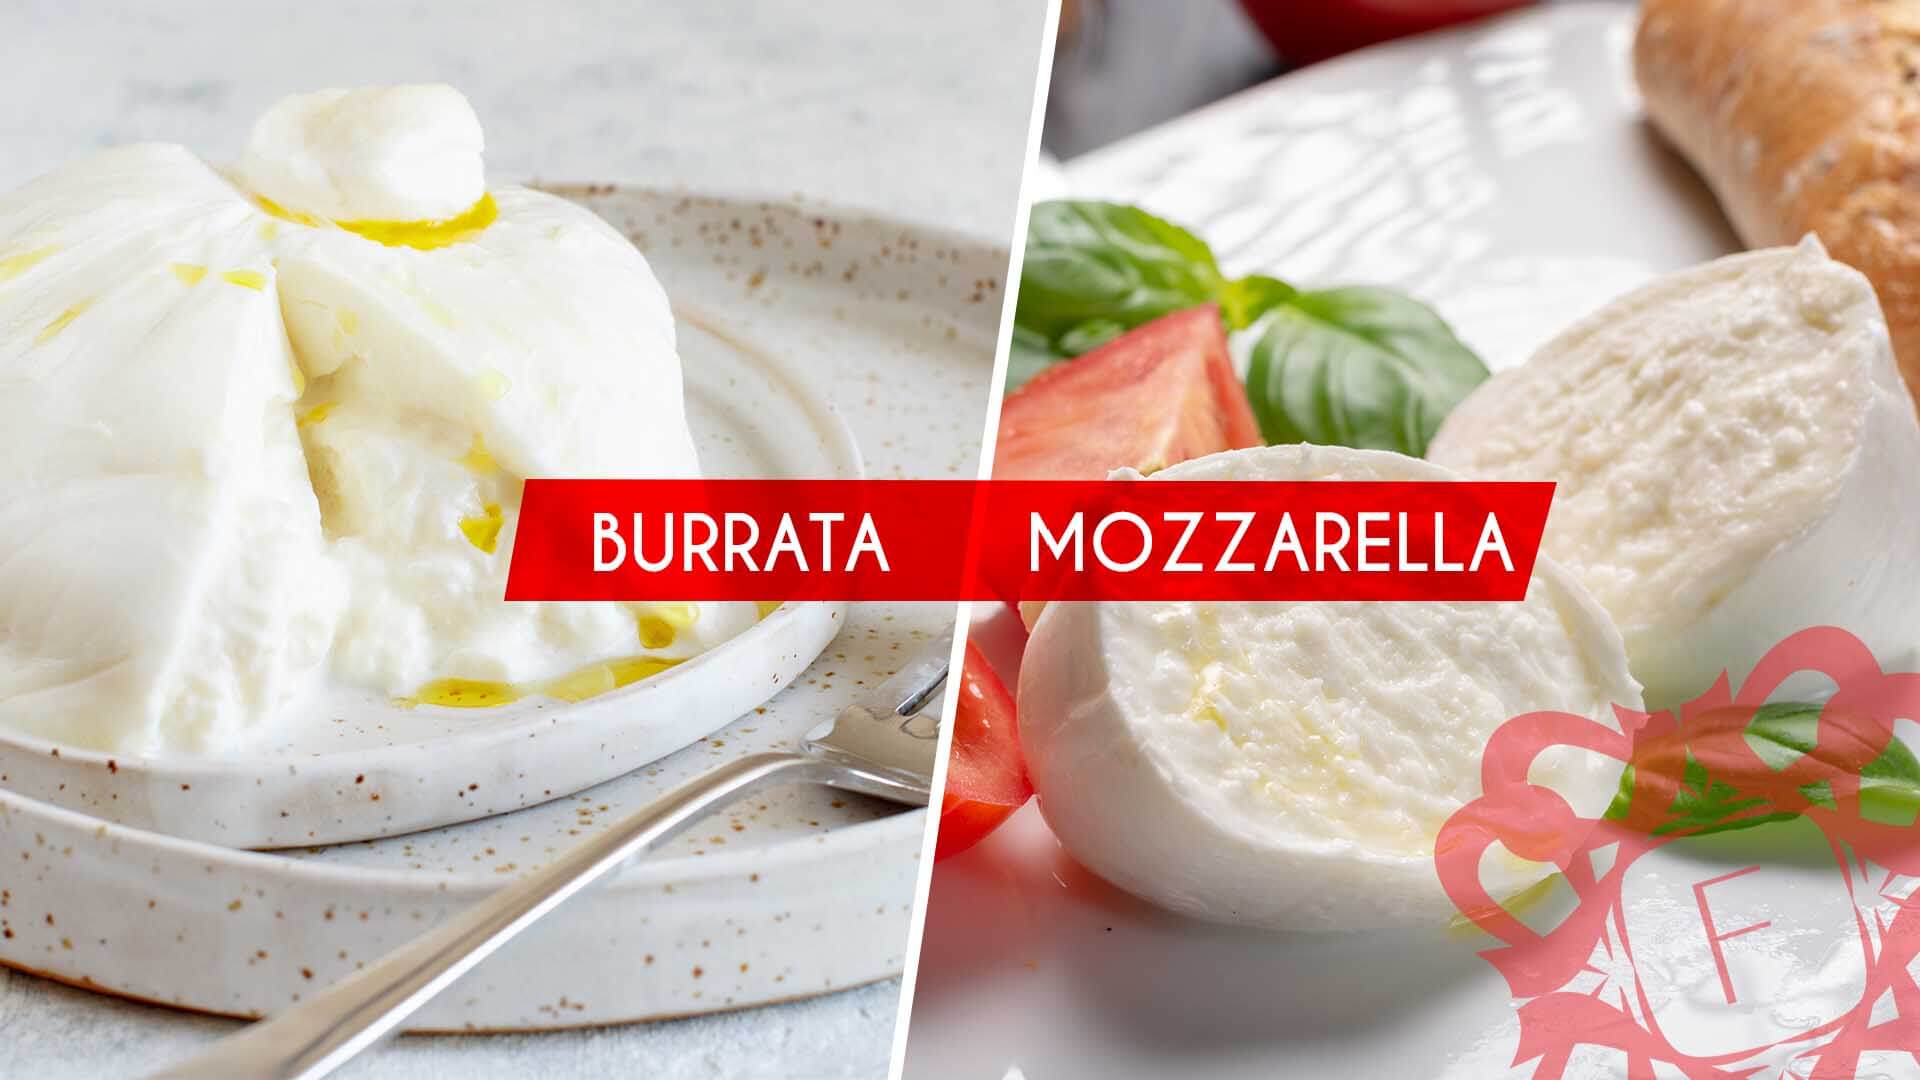 You are currently viewing Afla care e diferenta intre Burrata si Mozzarella